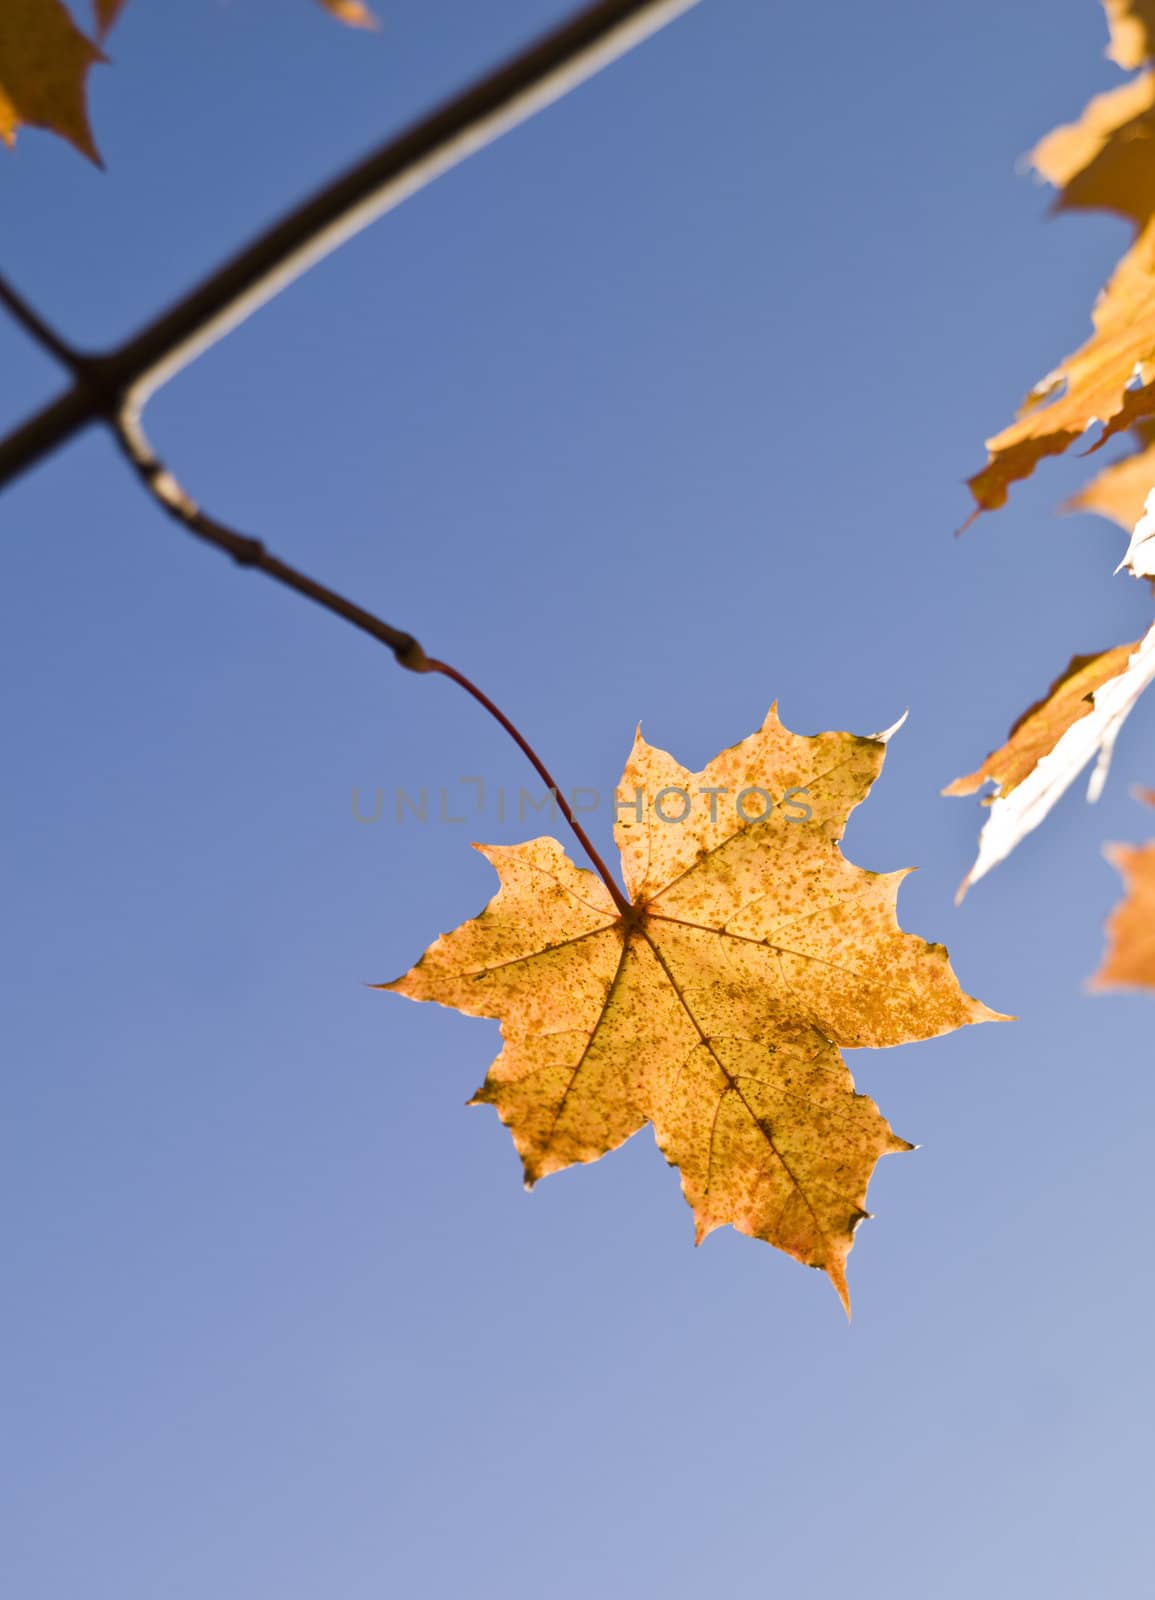 Autumn leafs by gemenacom